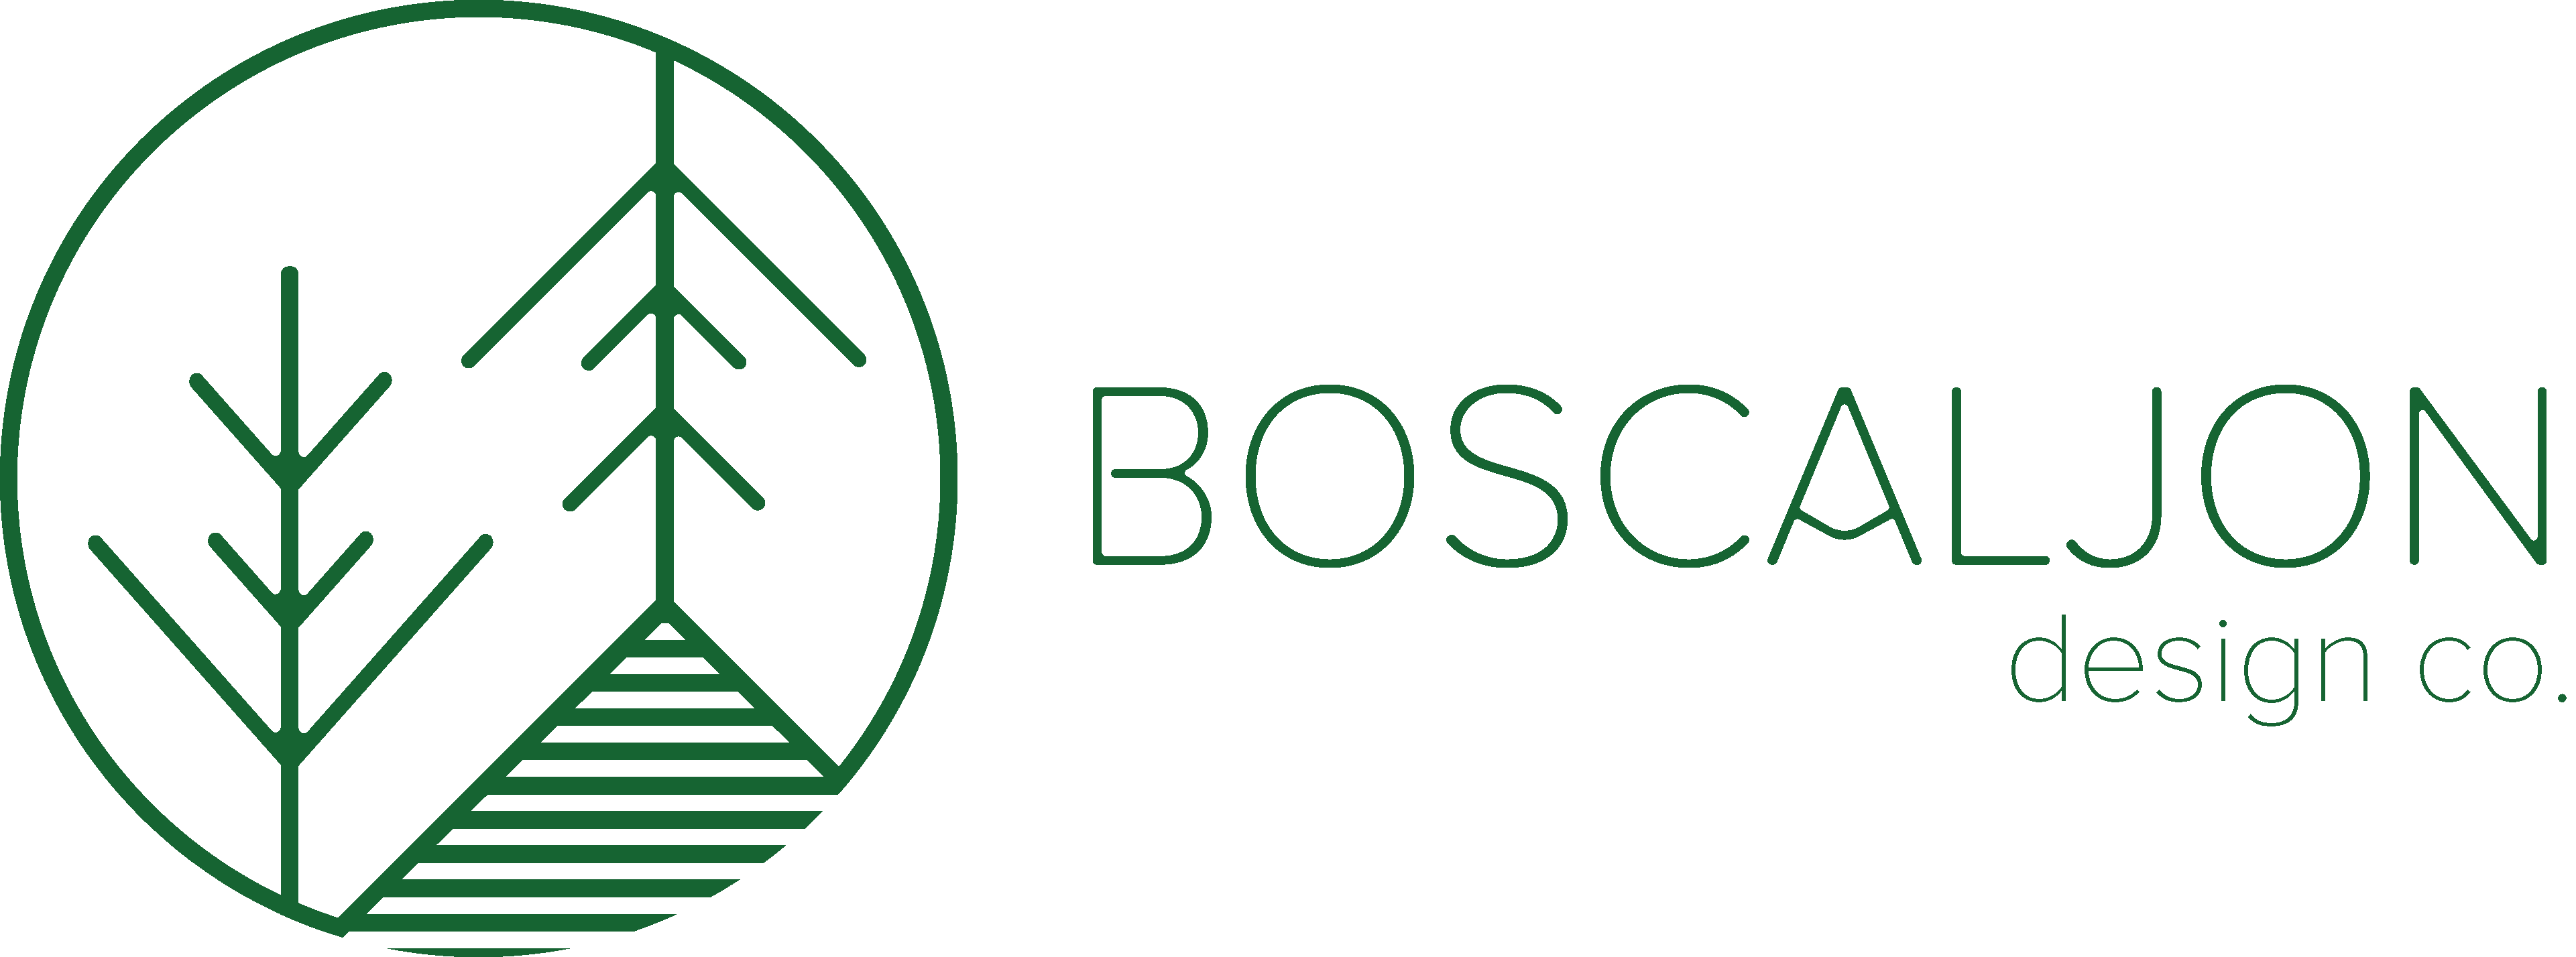 Boscaljon Design Co.